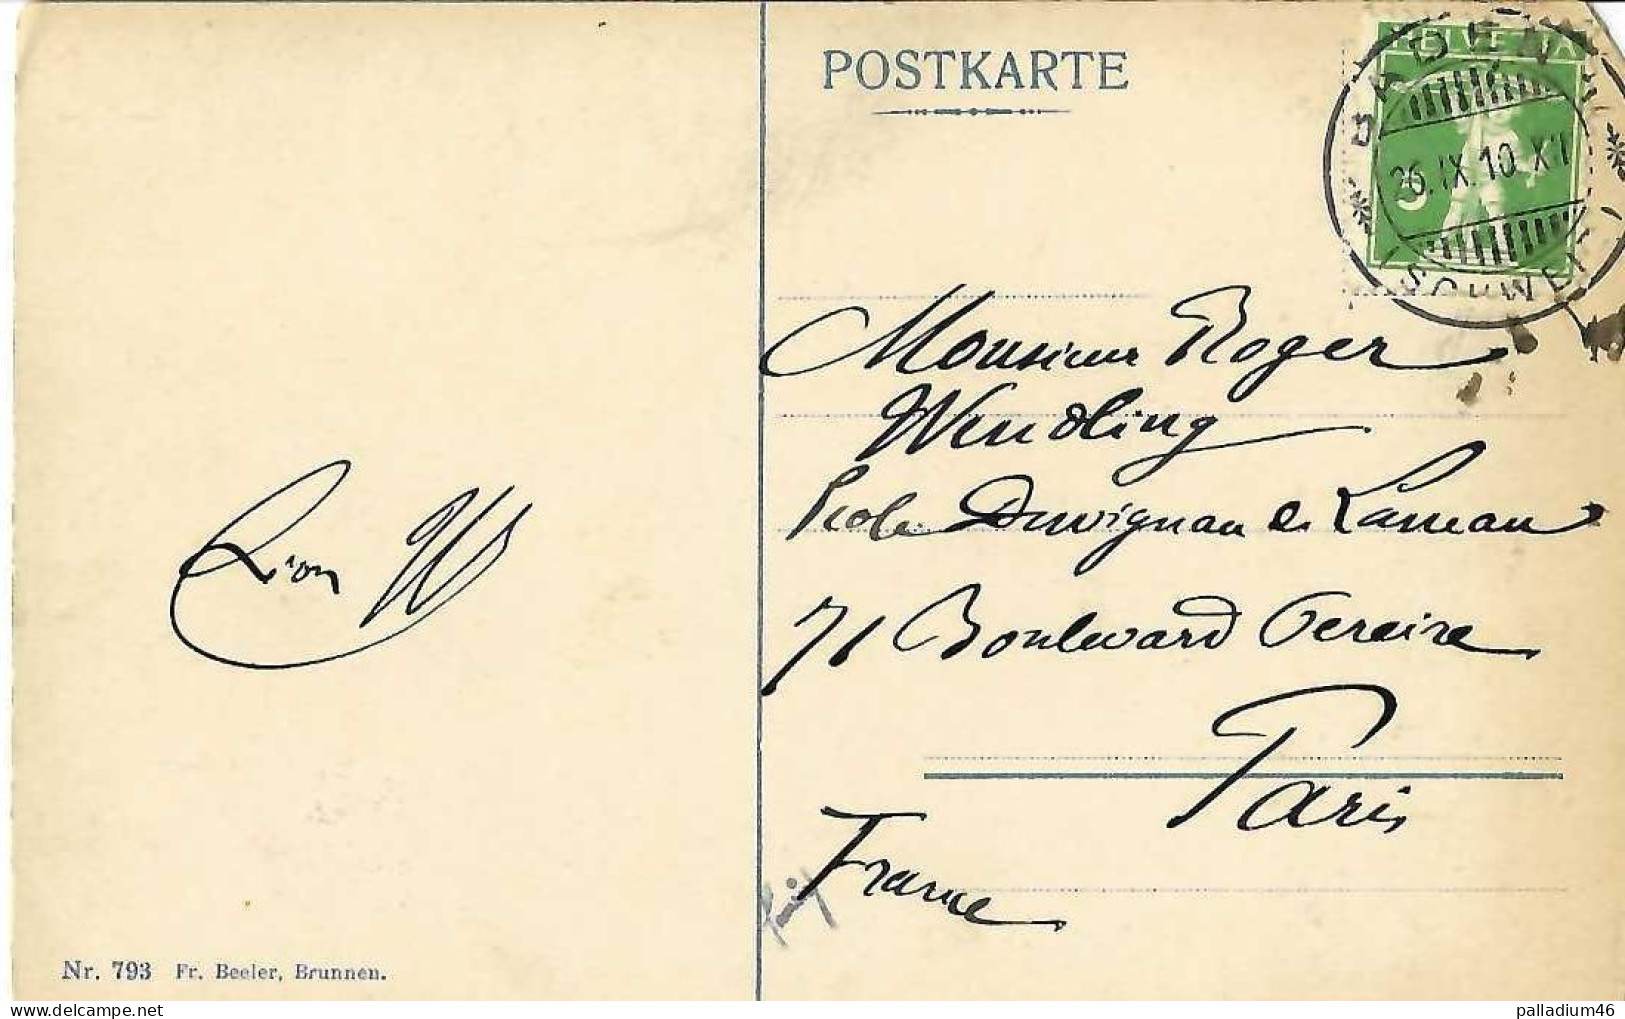 URI - Göschenen Gotthardtunnel U. D. Reuss - Fr, Beeler Brunnen No 793 - écrite Le 26.09.1910 - Göschenen